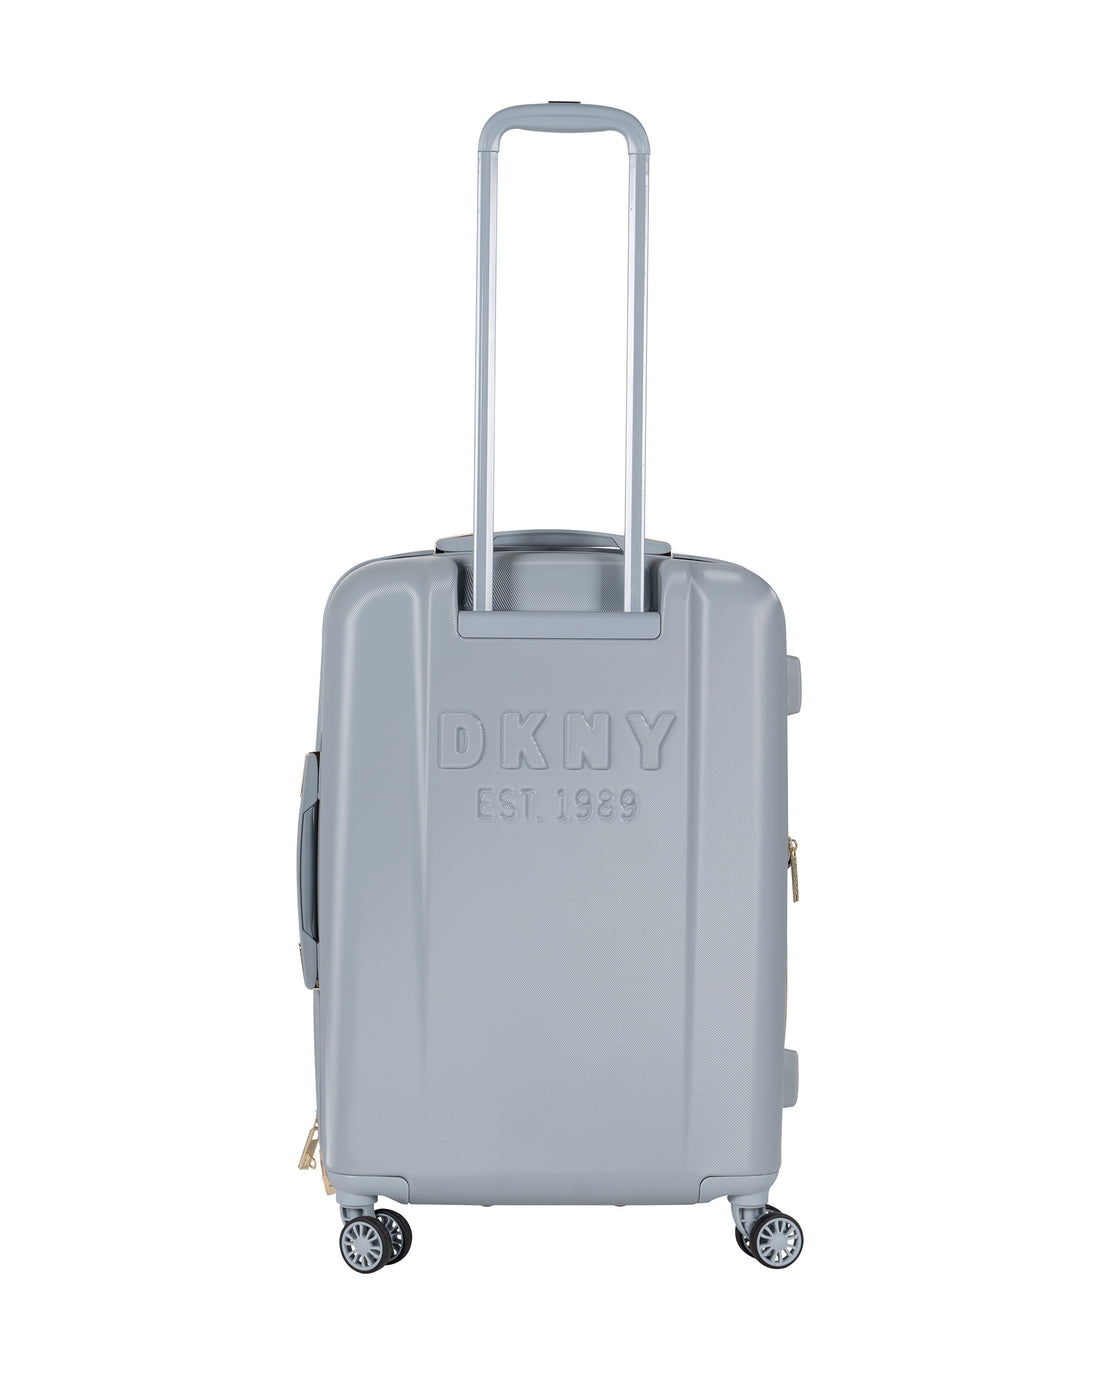 DKNY - حقيبة سفر متوسطة الحجم باللون الرمادي